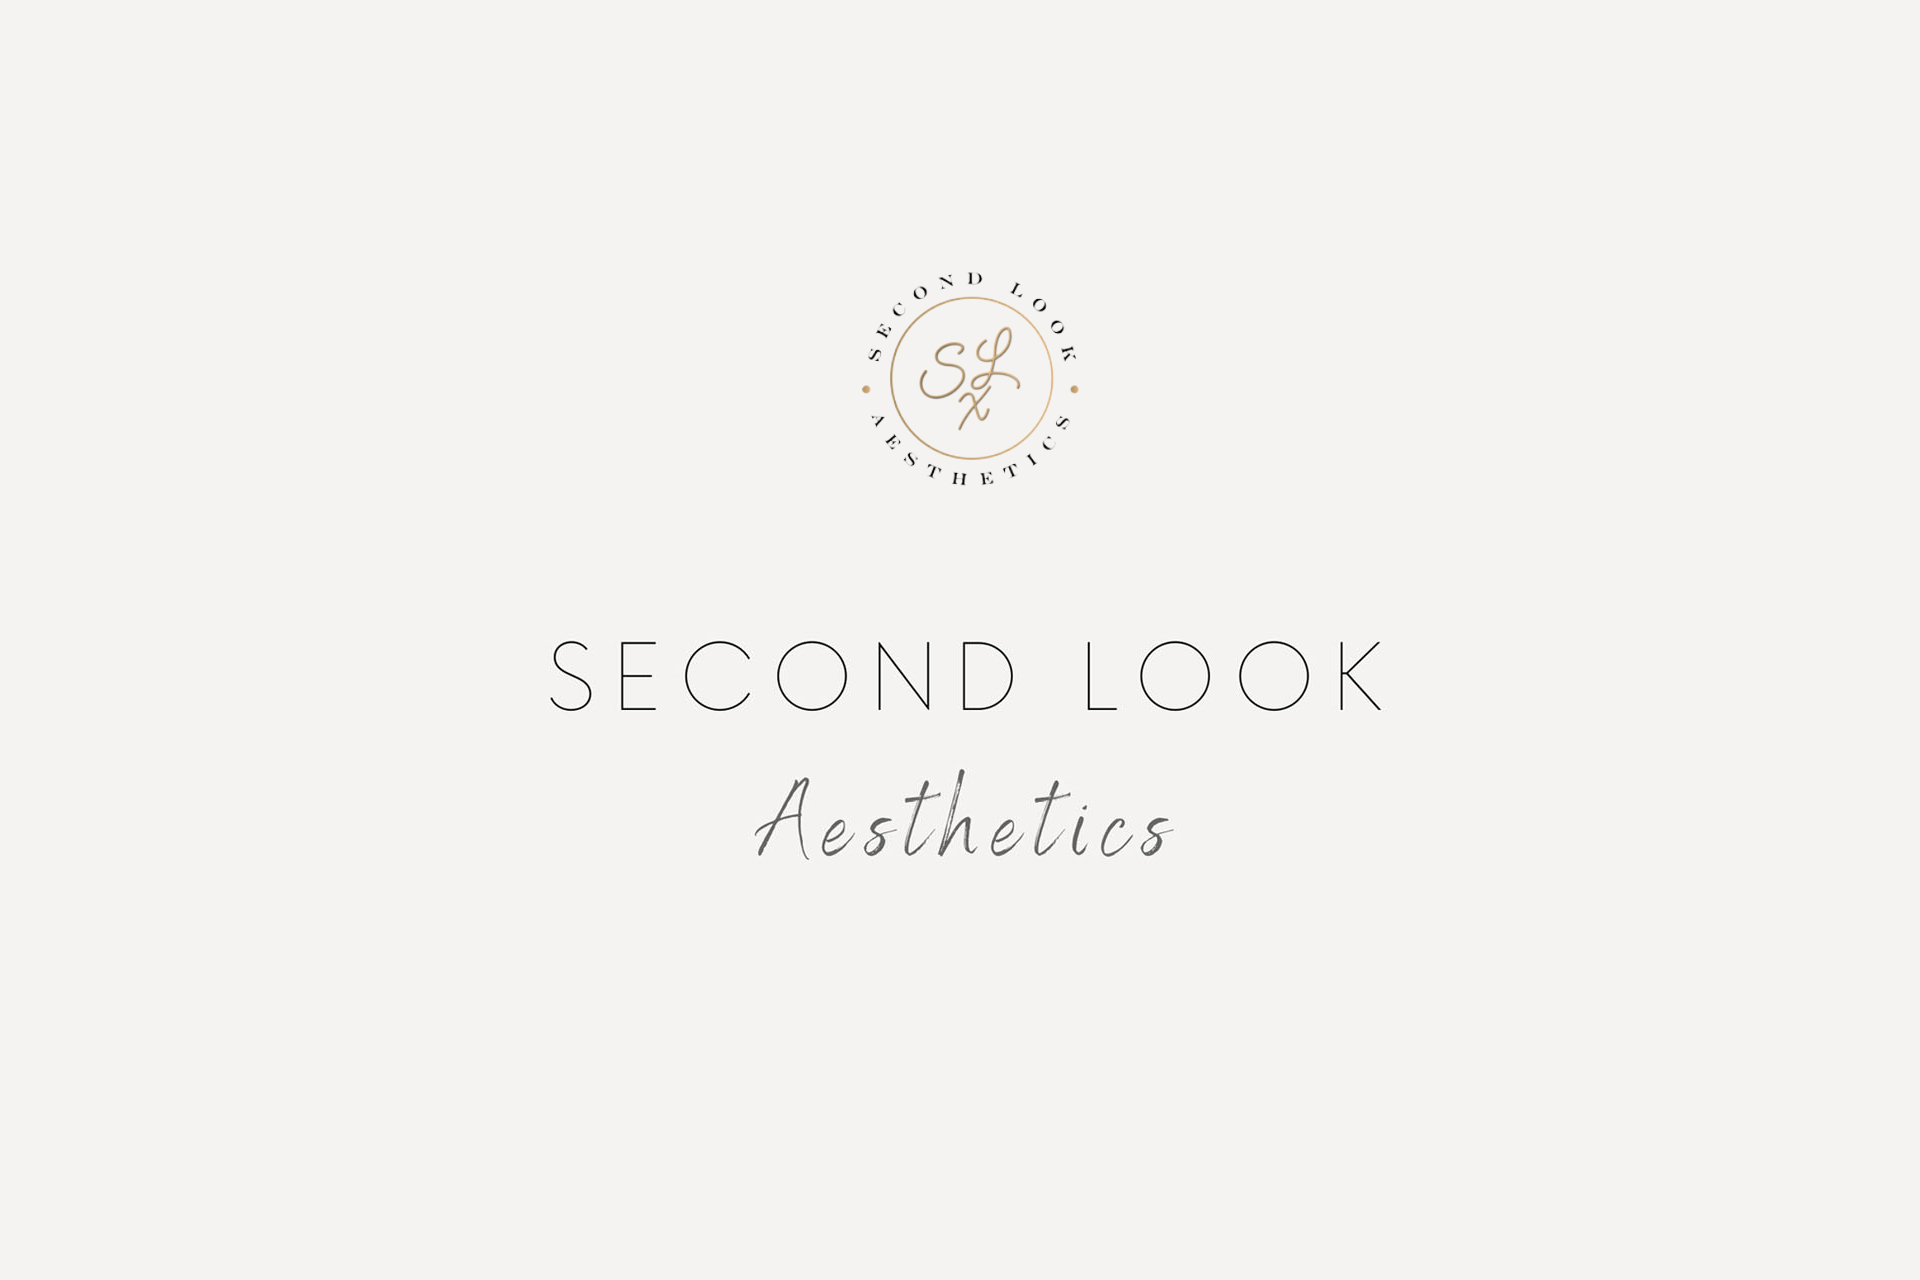 Second Look Aesthetics